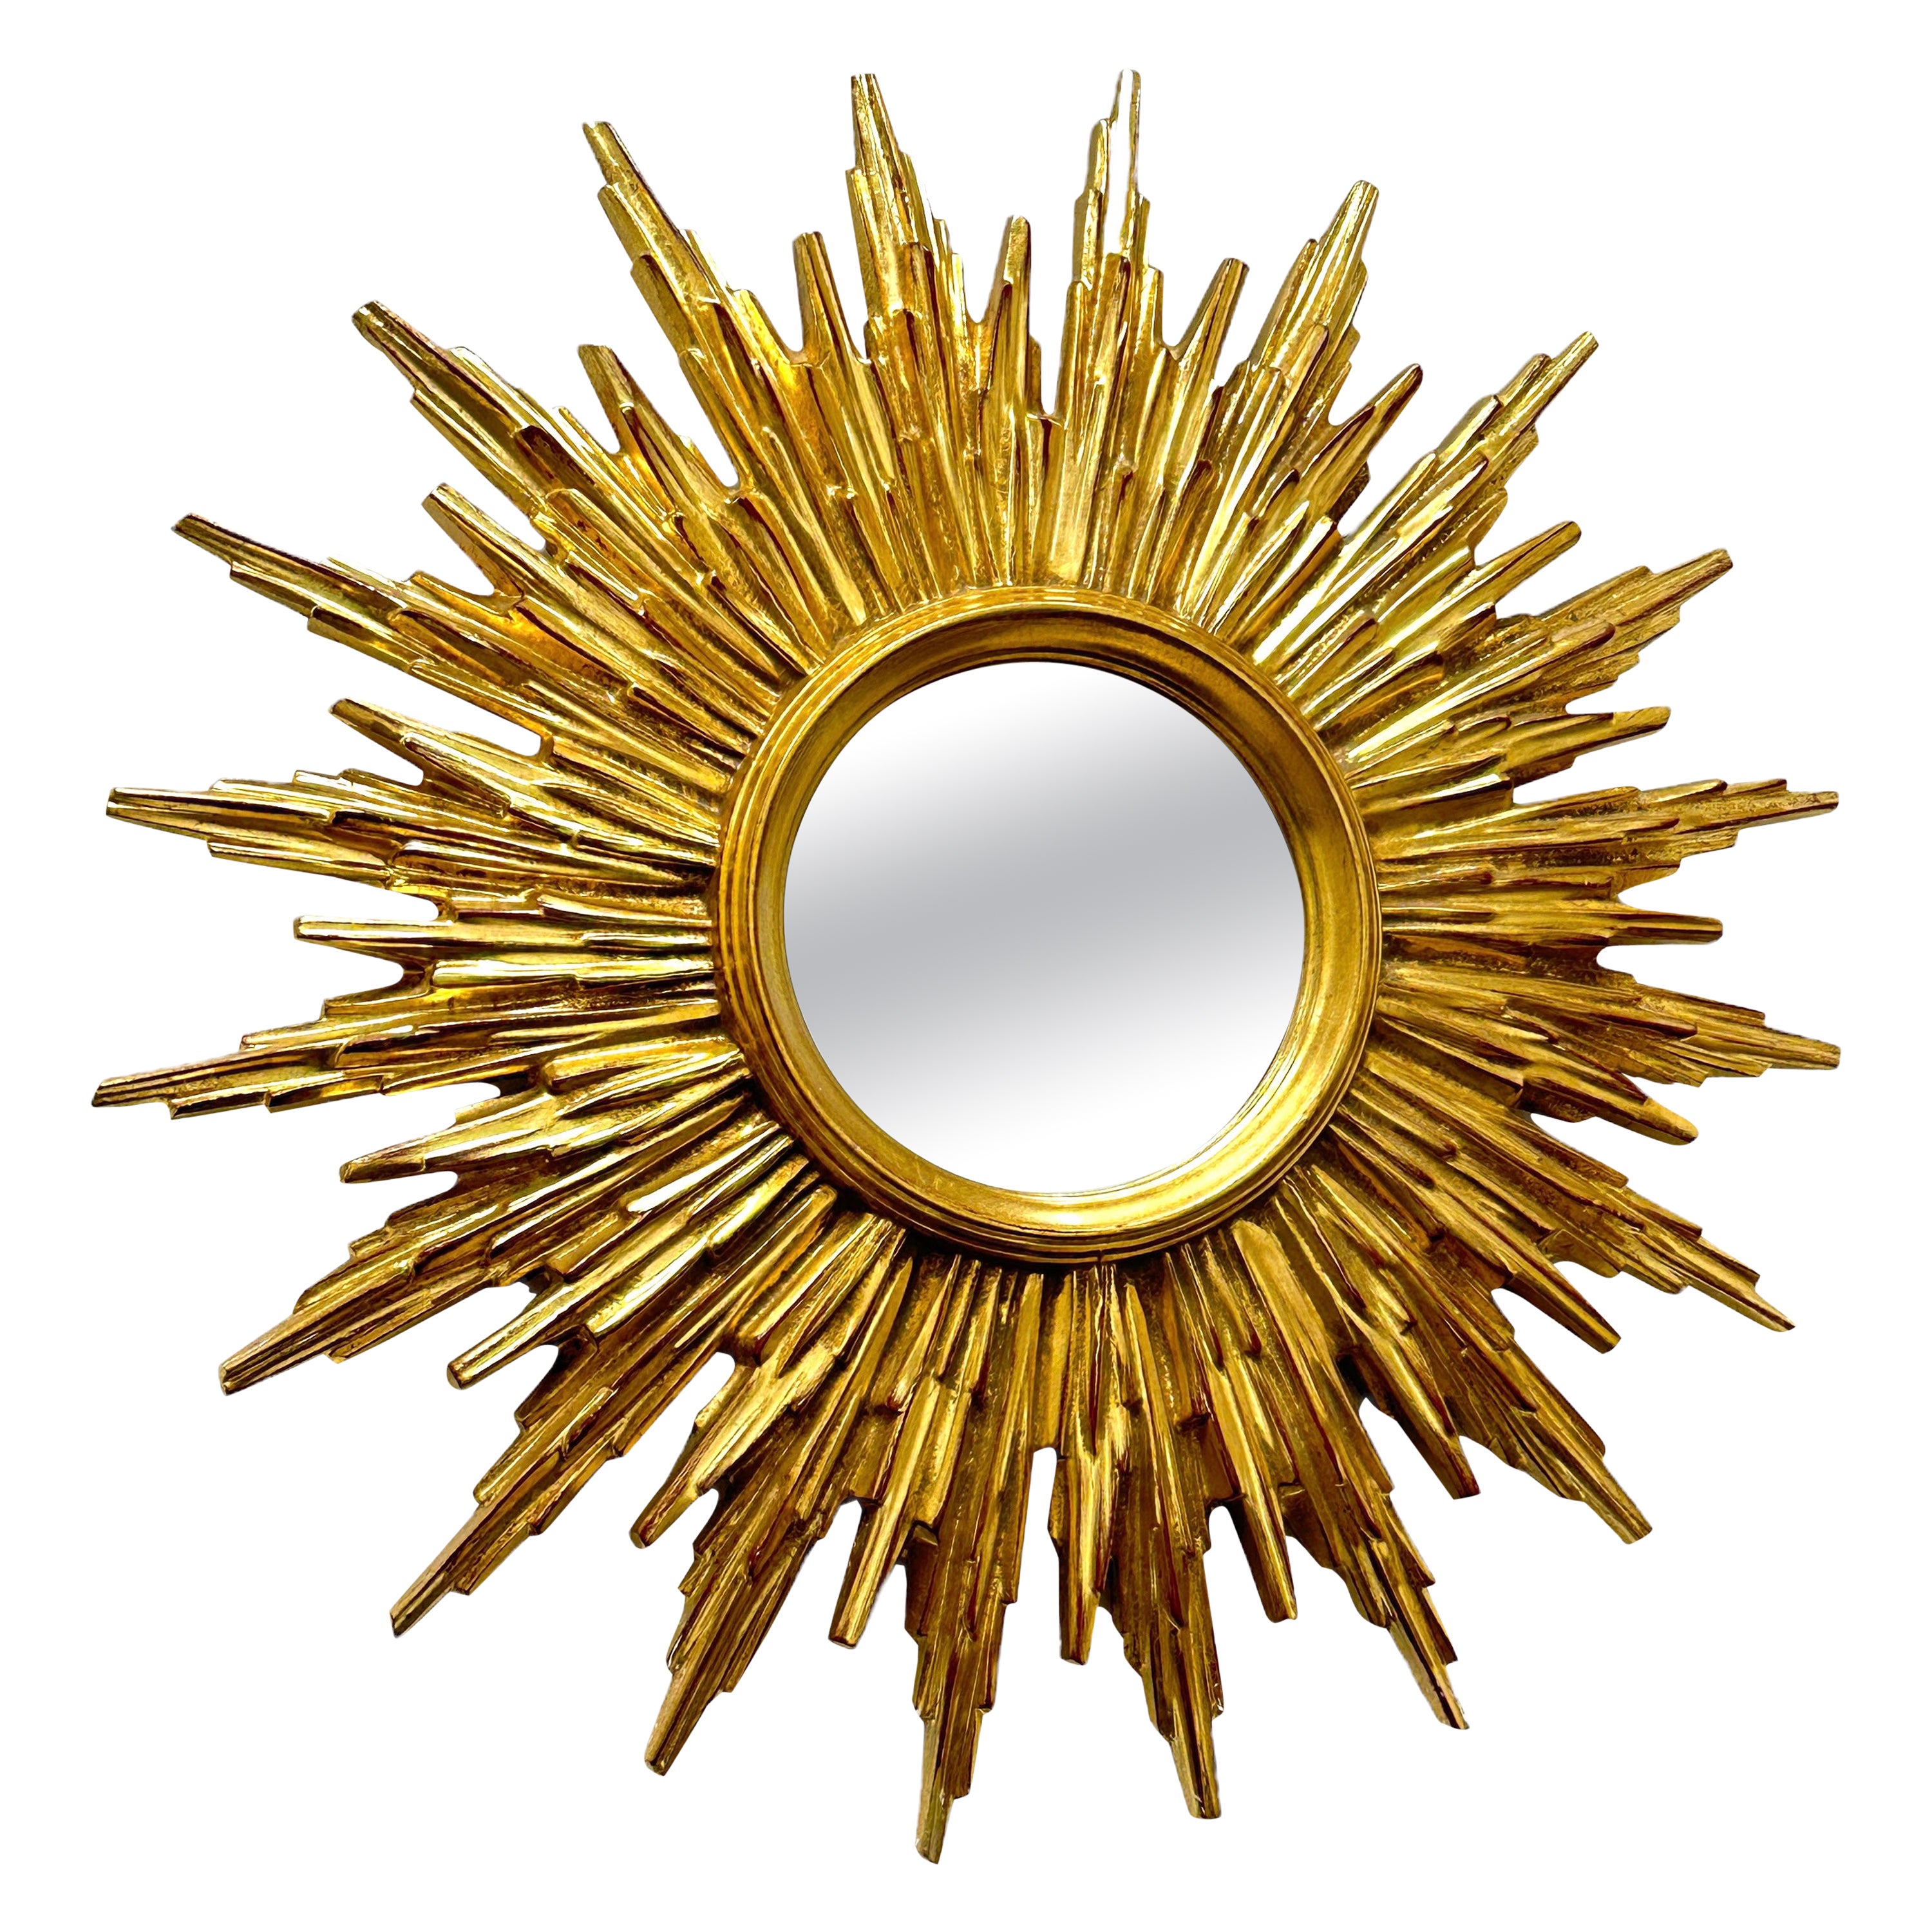 Beautiful Gilded Starburst Sunburst Mirror circa 1980s Made in Belgium